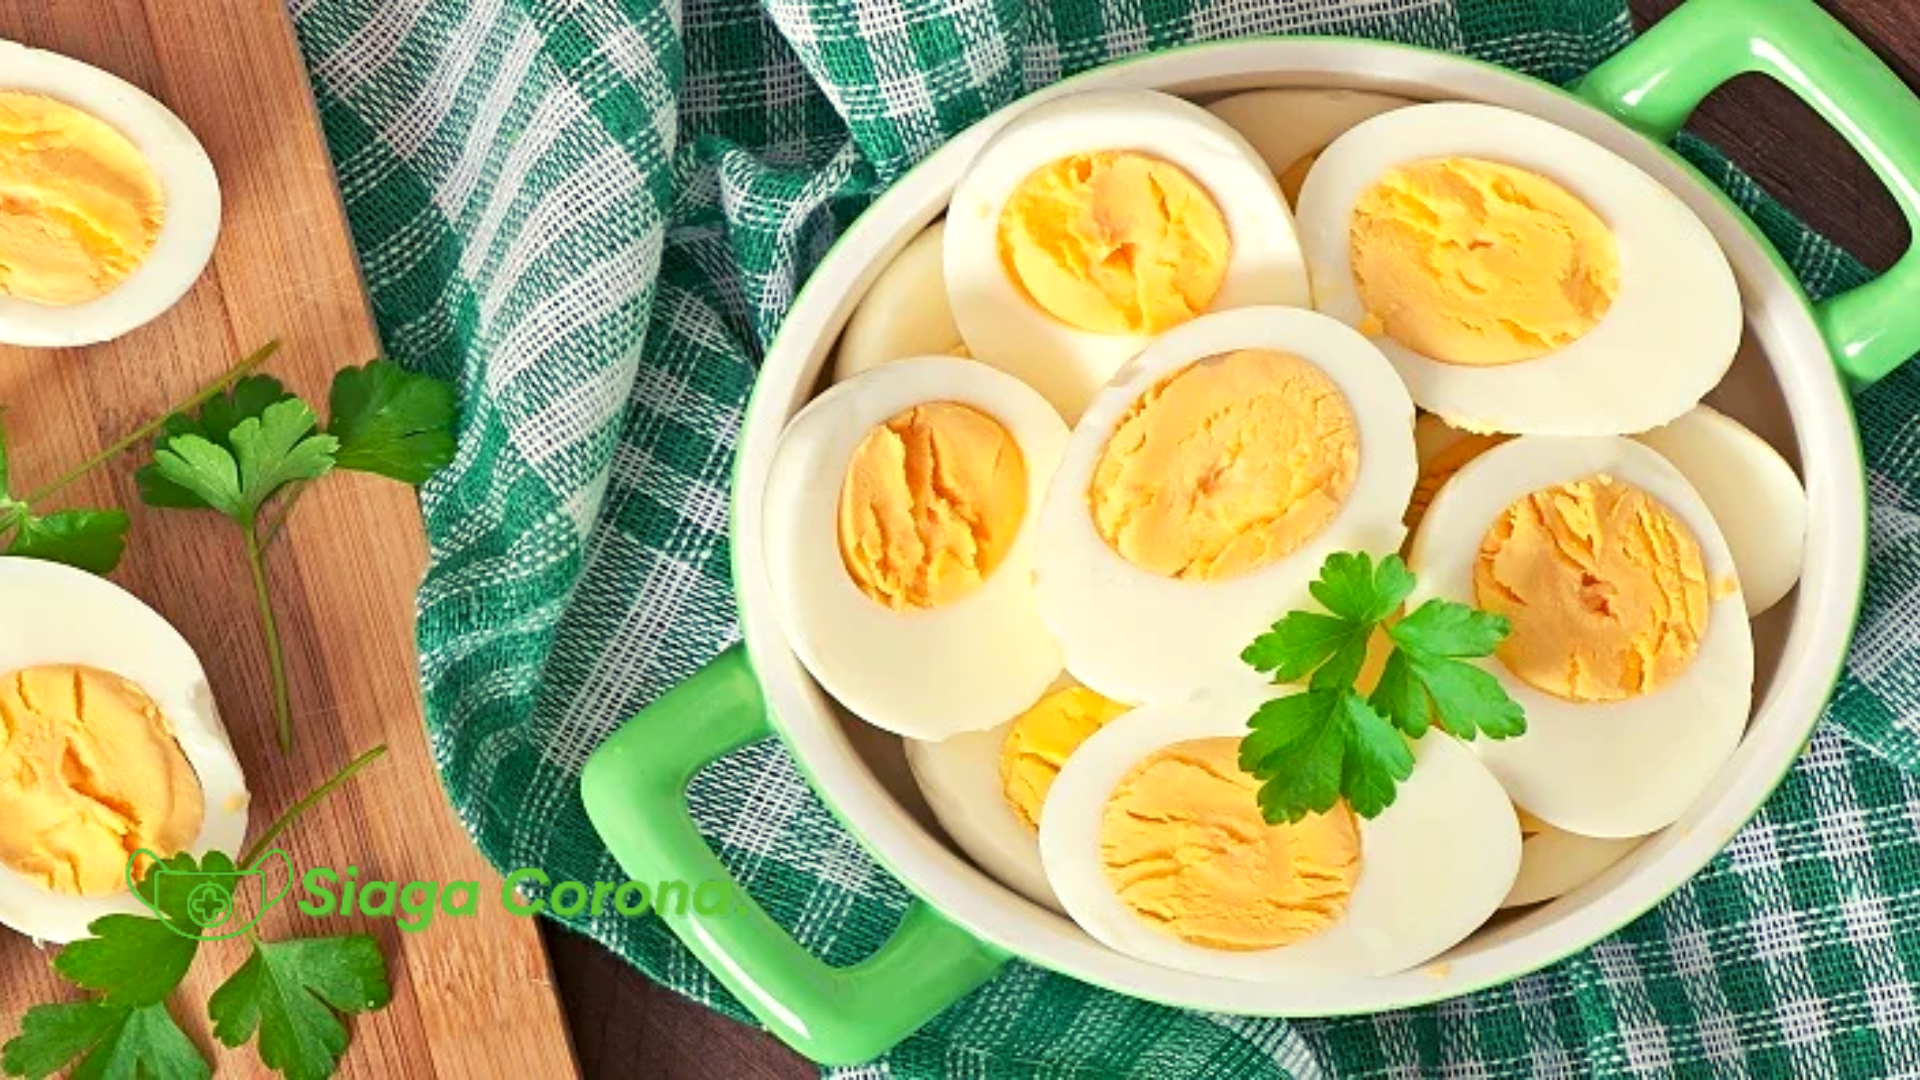 Manfaat Telur Rebus untuk Diet yang Jarang Diketahui